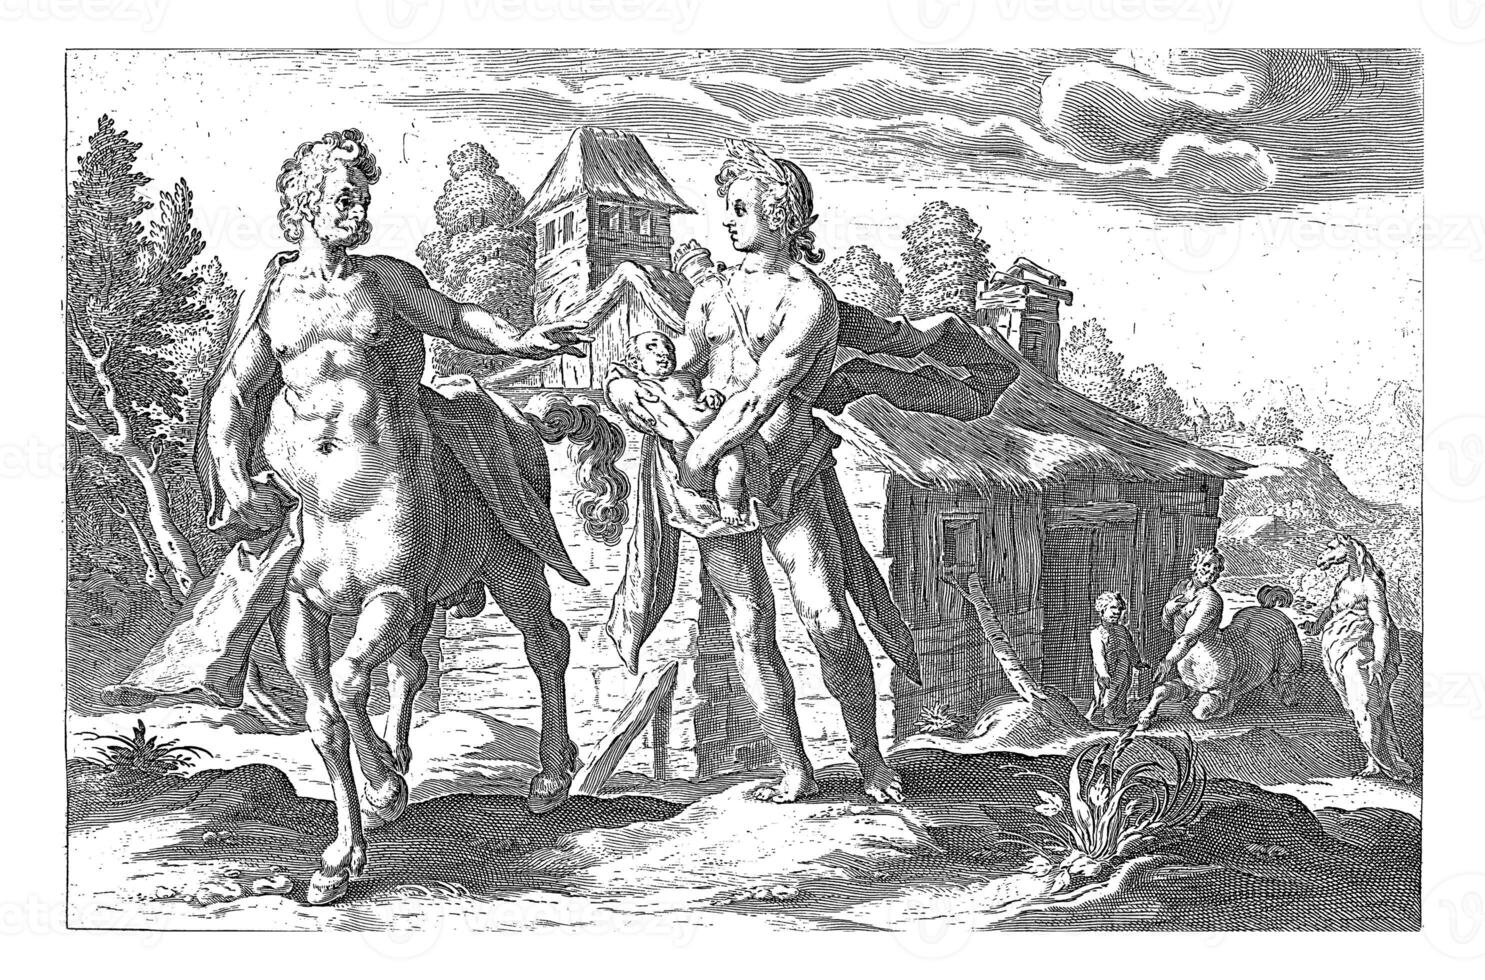 Apollo entrusts Asclepius to Chiron, vintage illustration. photo